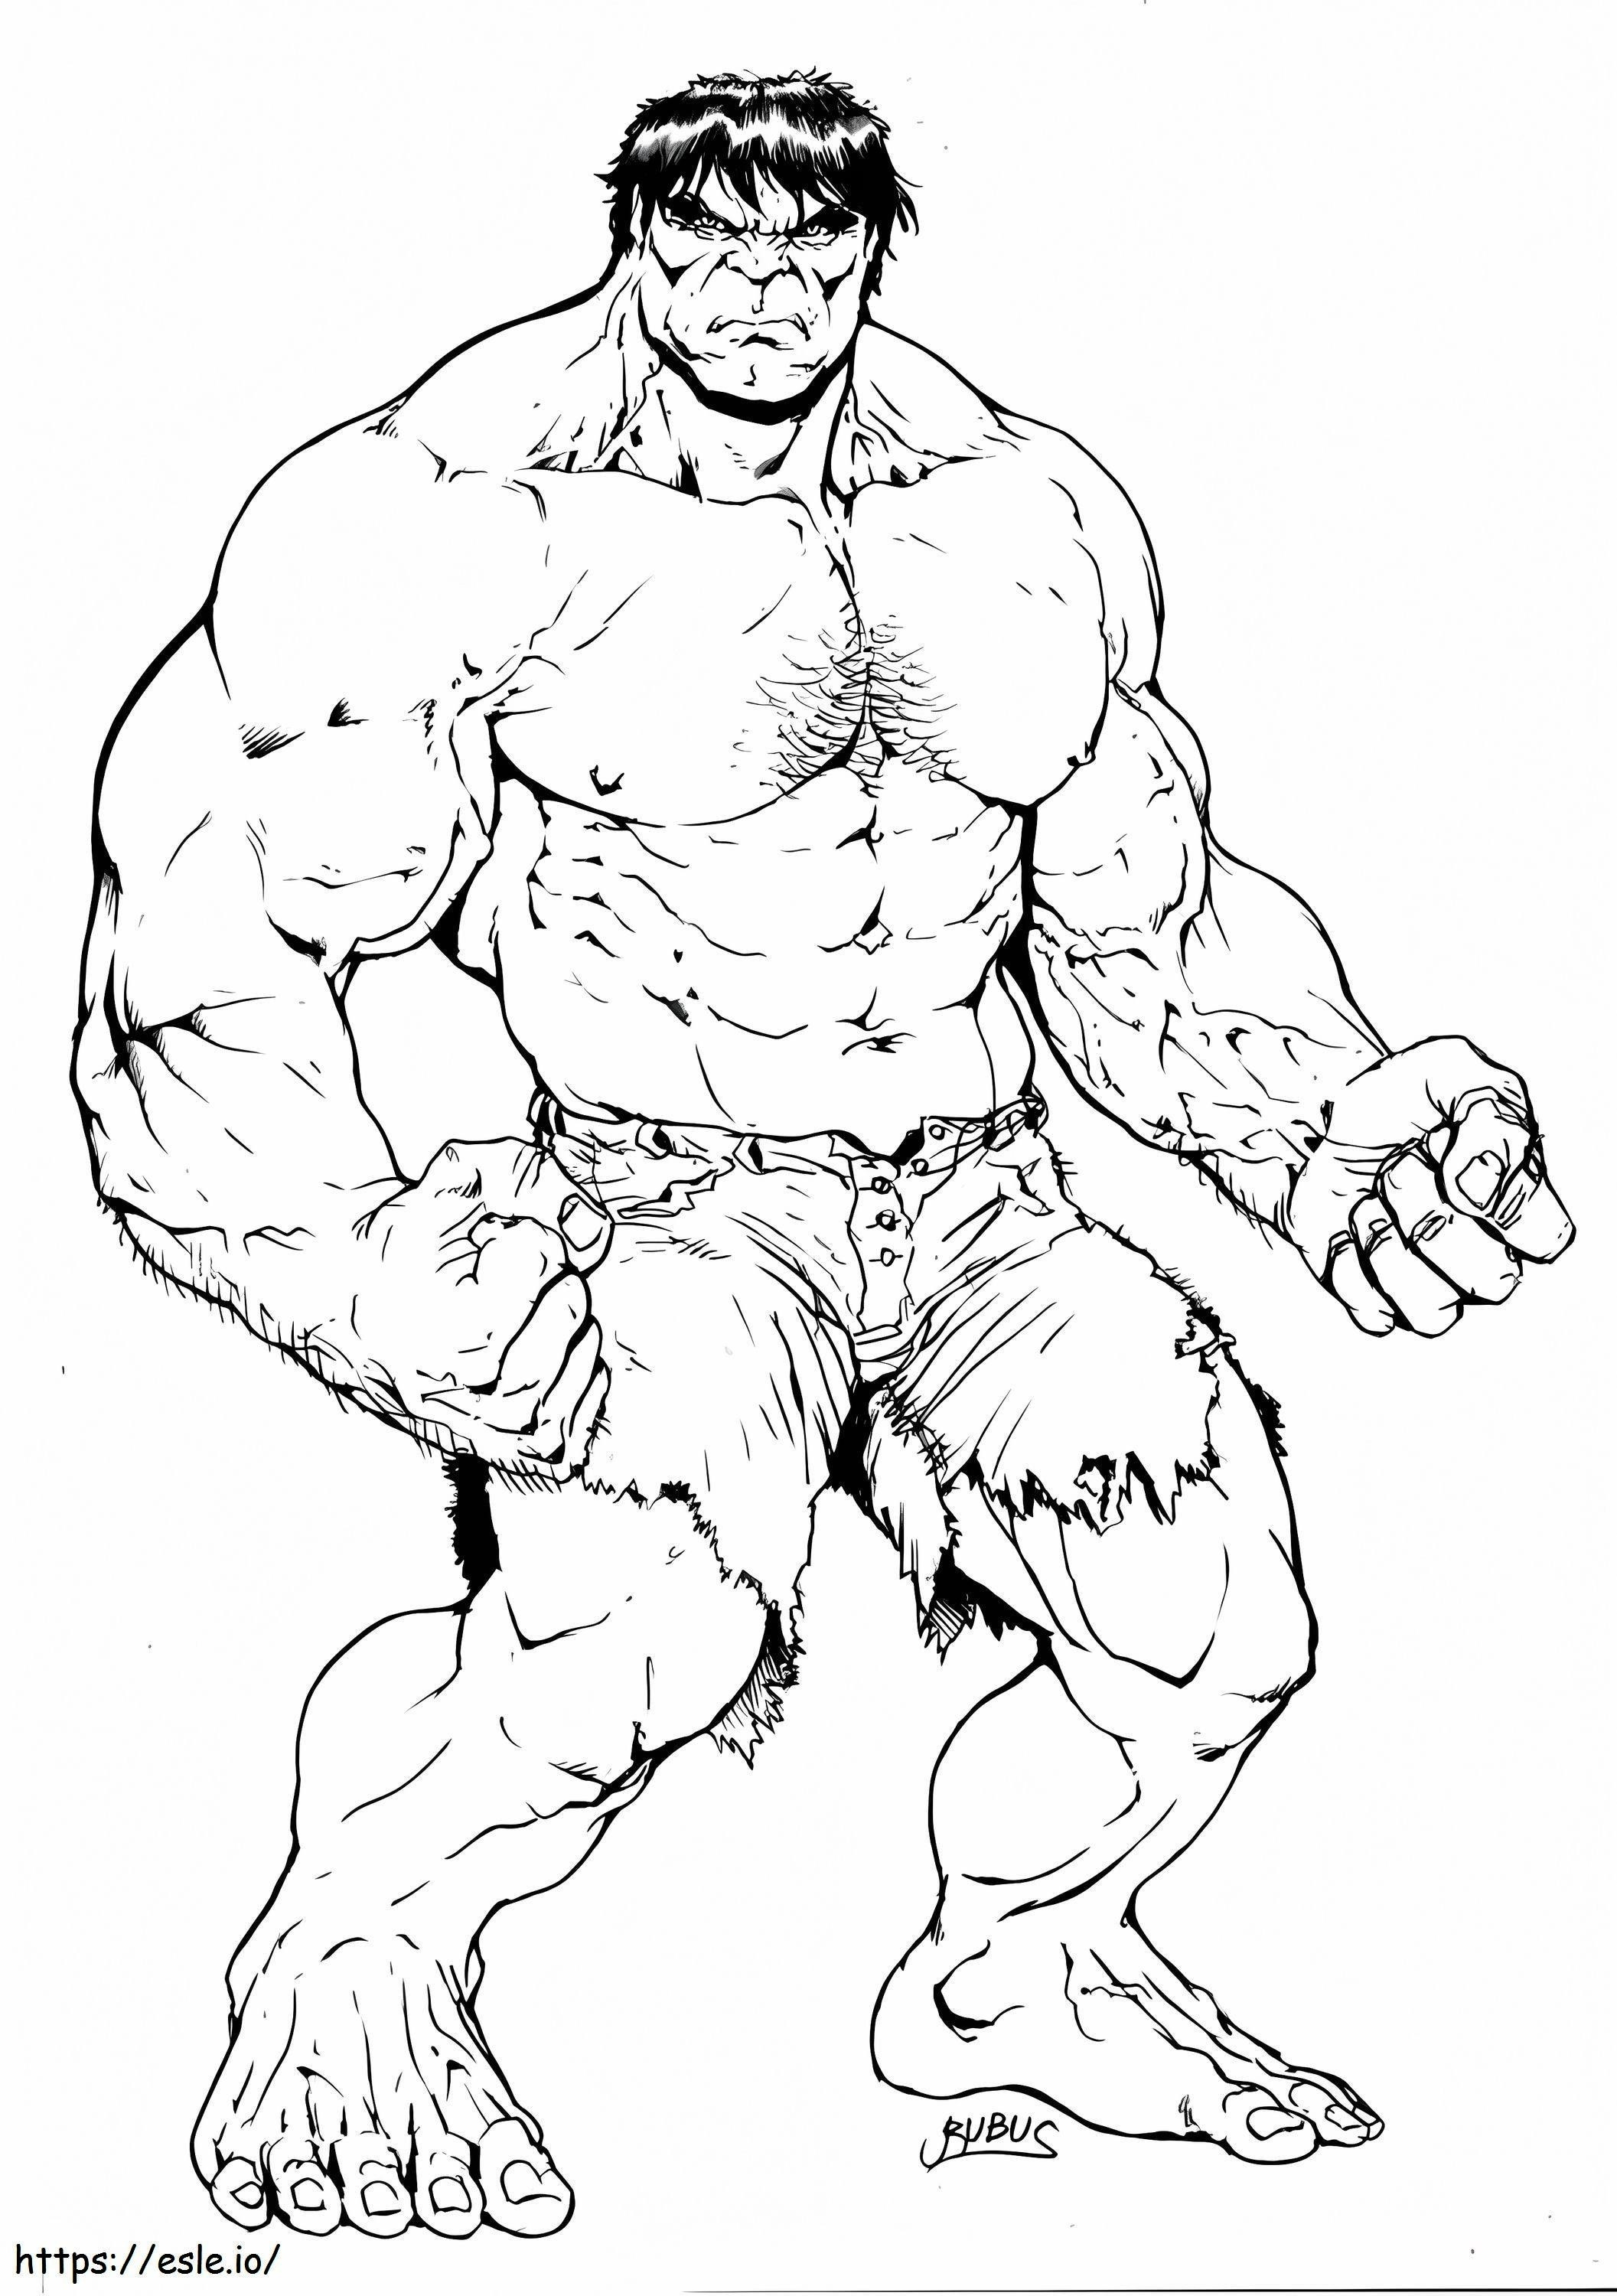 Big Hulk coloring page